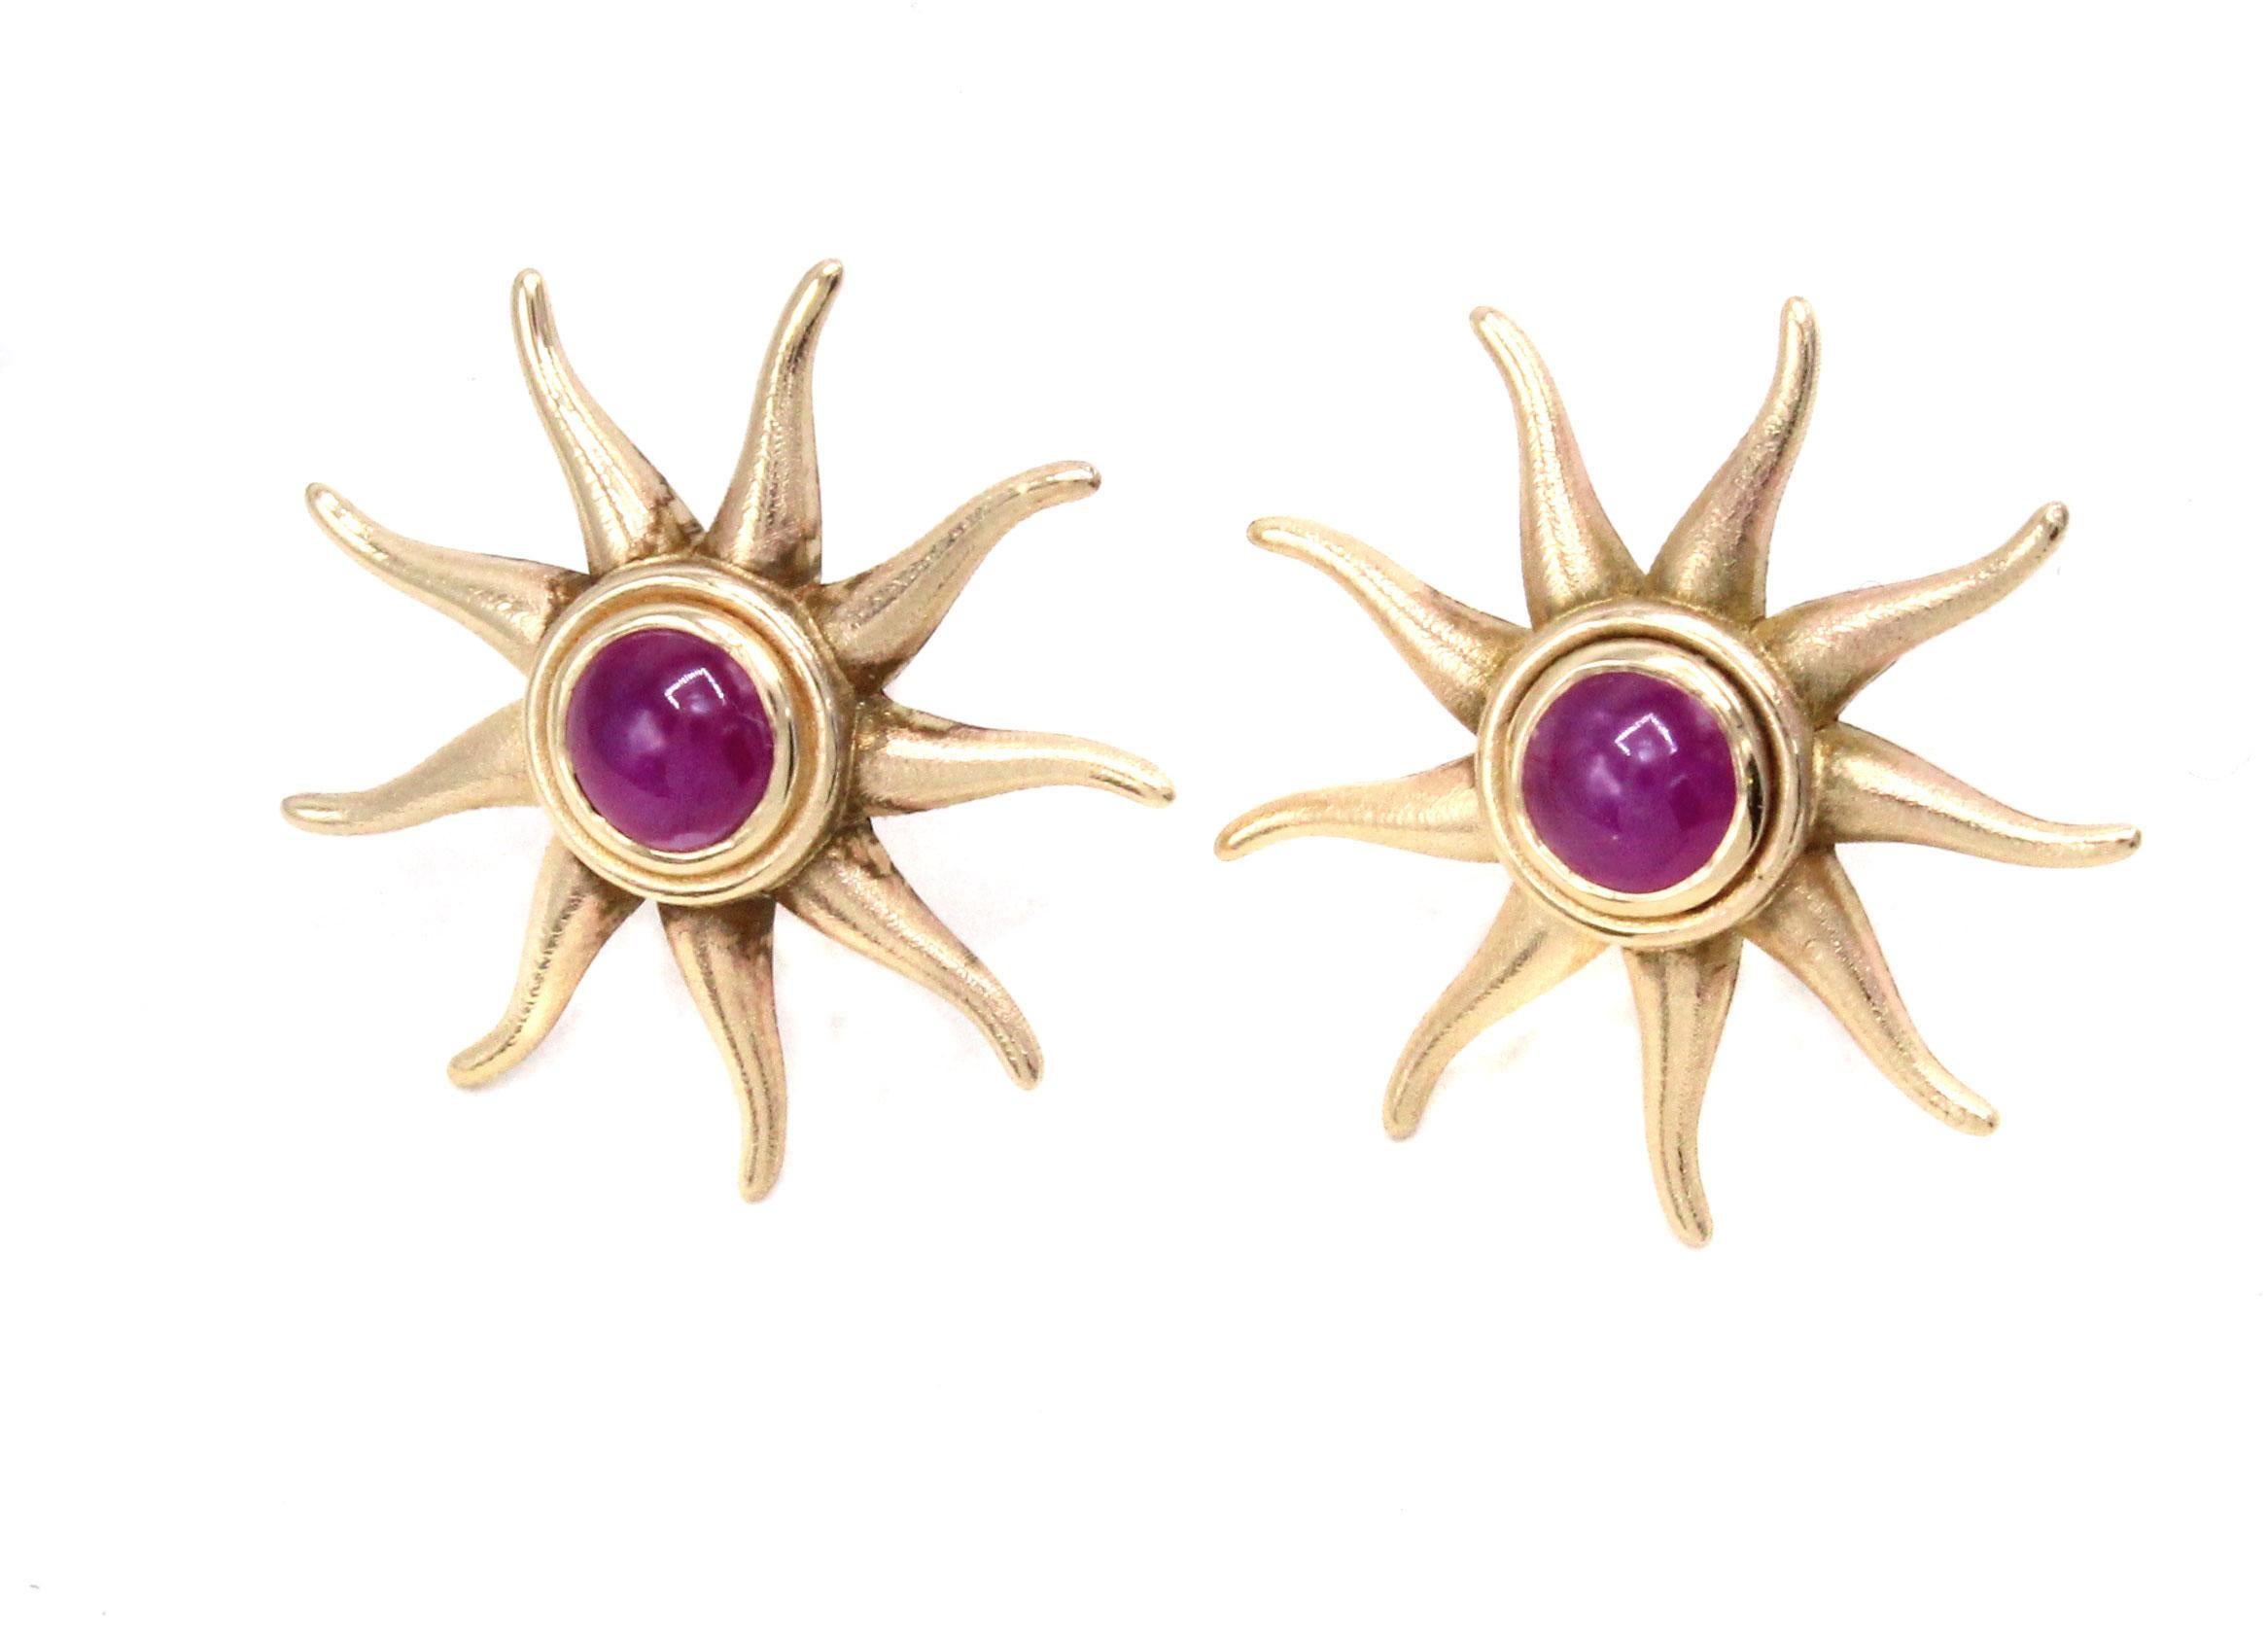 Unsere einzigartigen Sun Burst Ohrringe sind eine aufregende Ergänzung zur Linie der Rive Gauche Jewelry Originaldesigns und bieten eine neue und aufregende Vielseitigkeit. Diese tragbaren Sunbursts sind lustig und elegant und bieten die perfekte